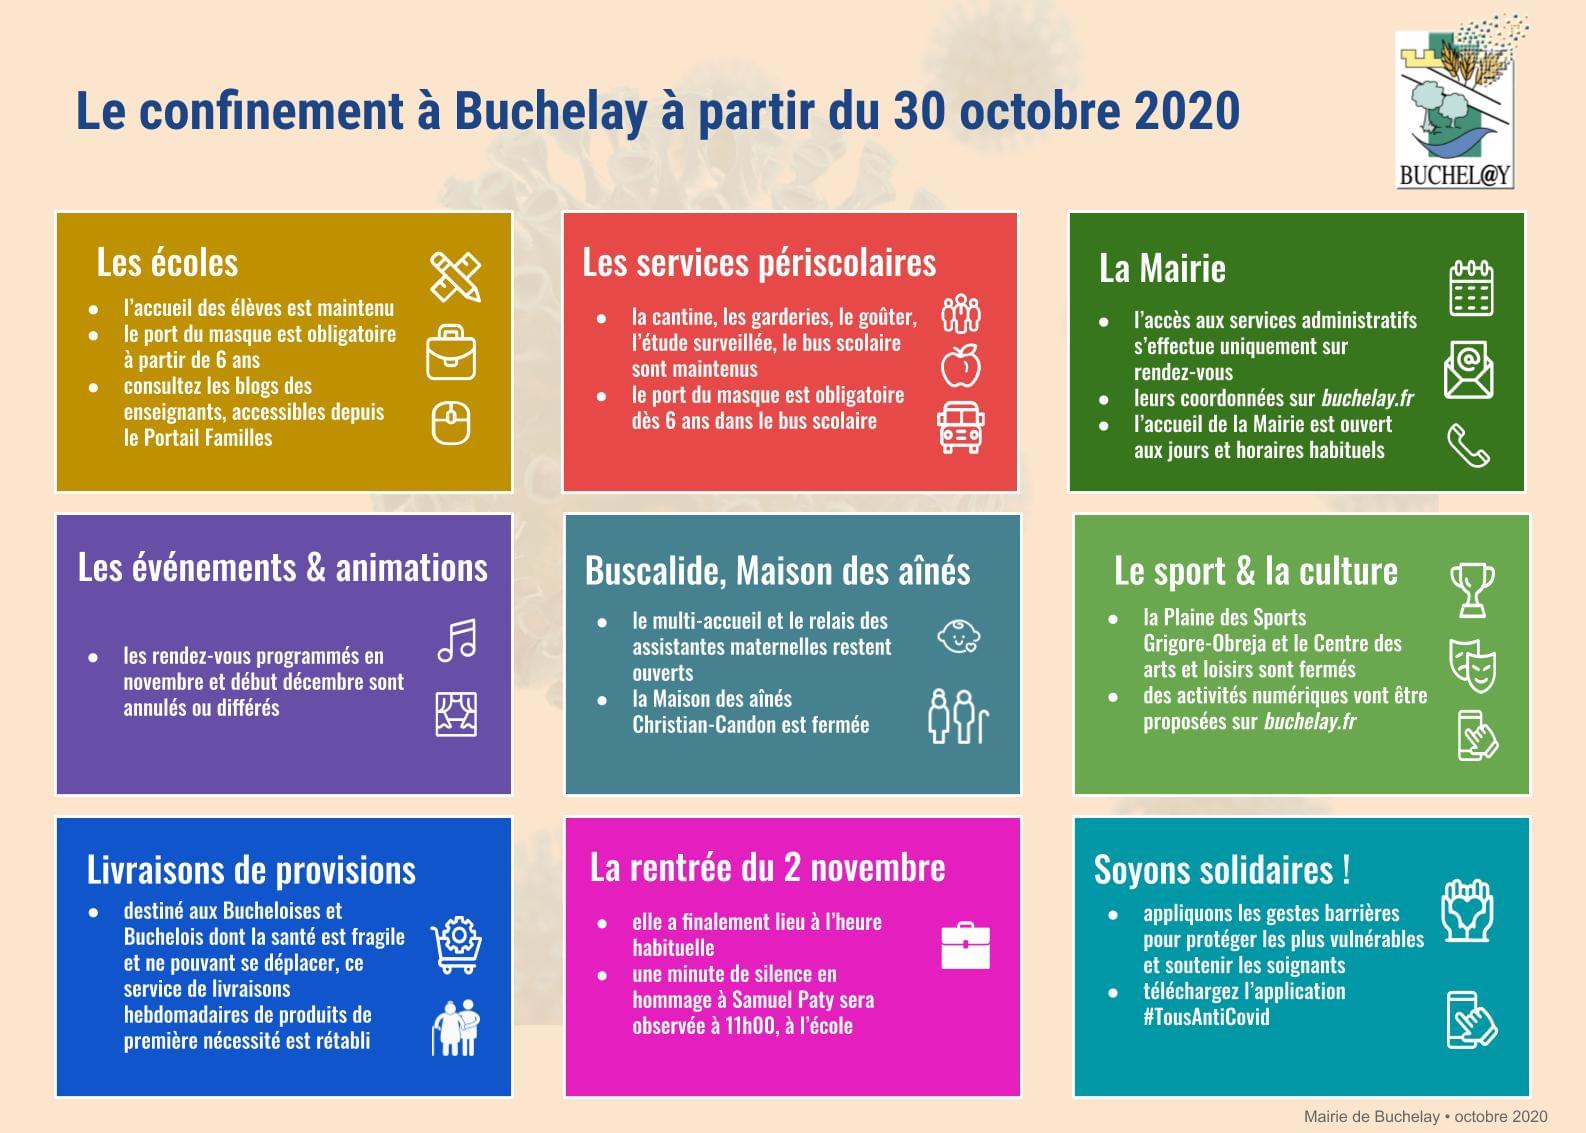 L’application du confinement à Buchelay - novembre 2020